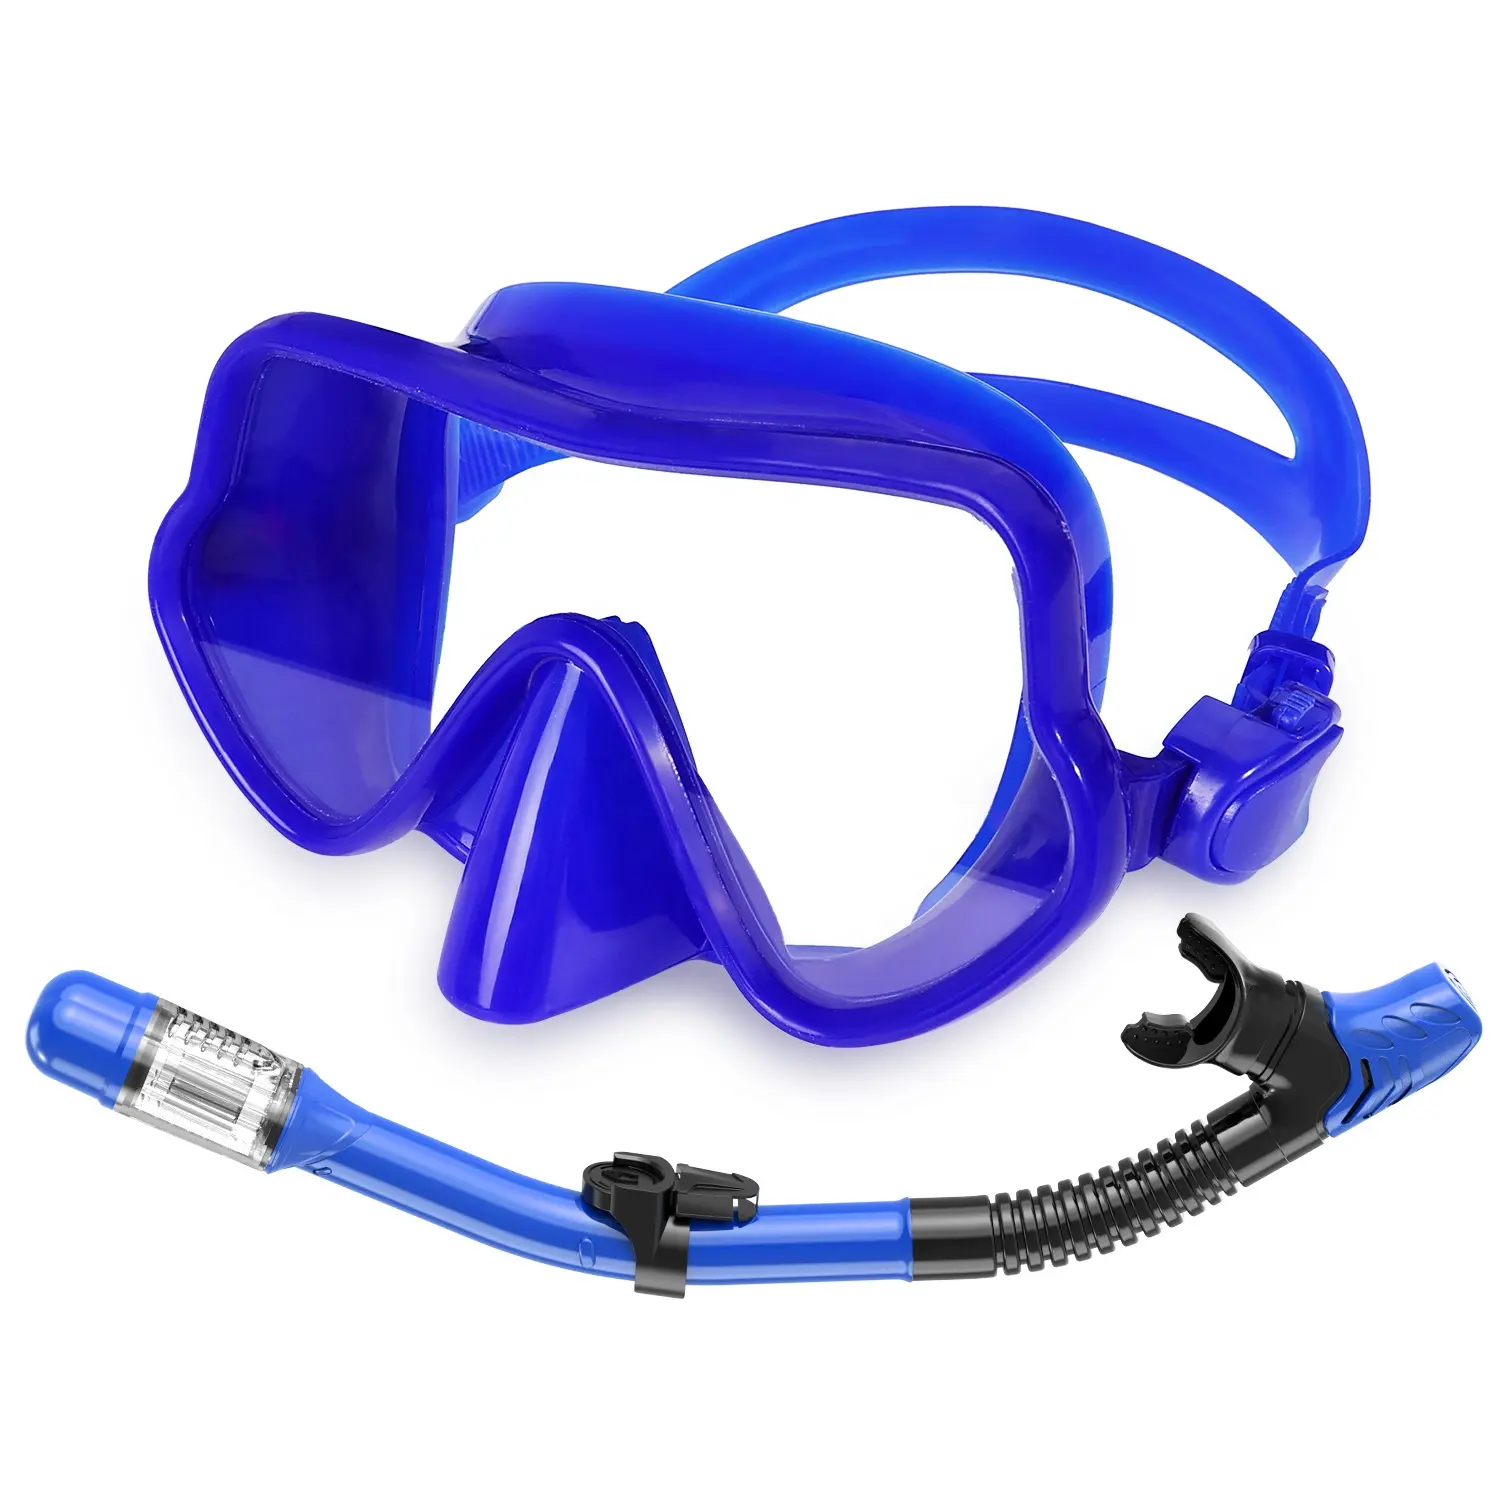 Équipement de jeu d'eau en verre trempé anti-buée en silicone Tube respiratoire Masque de plongée Ensemble d'équipement Masque de plongée avec tuba à sec